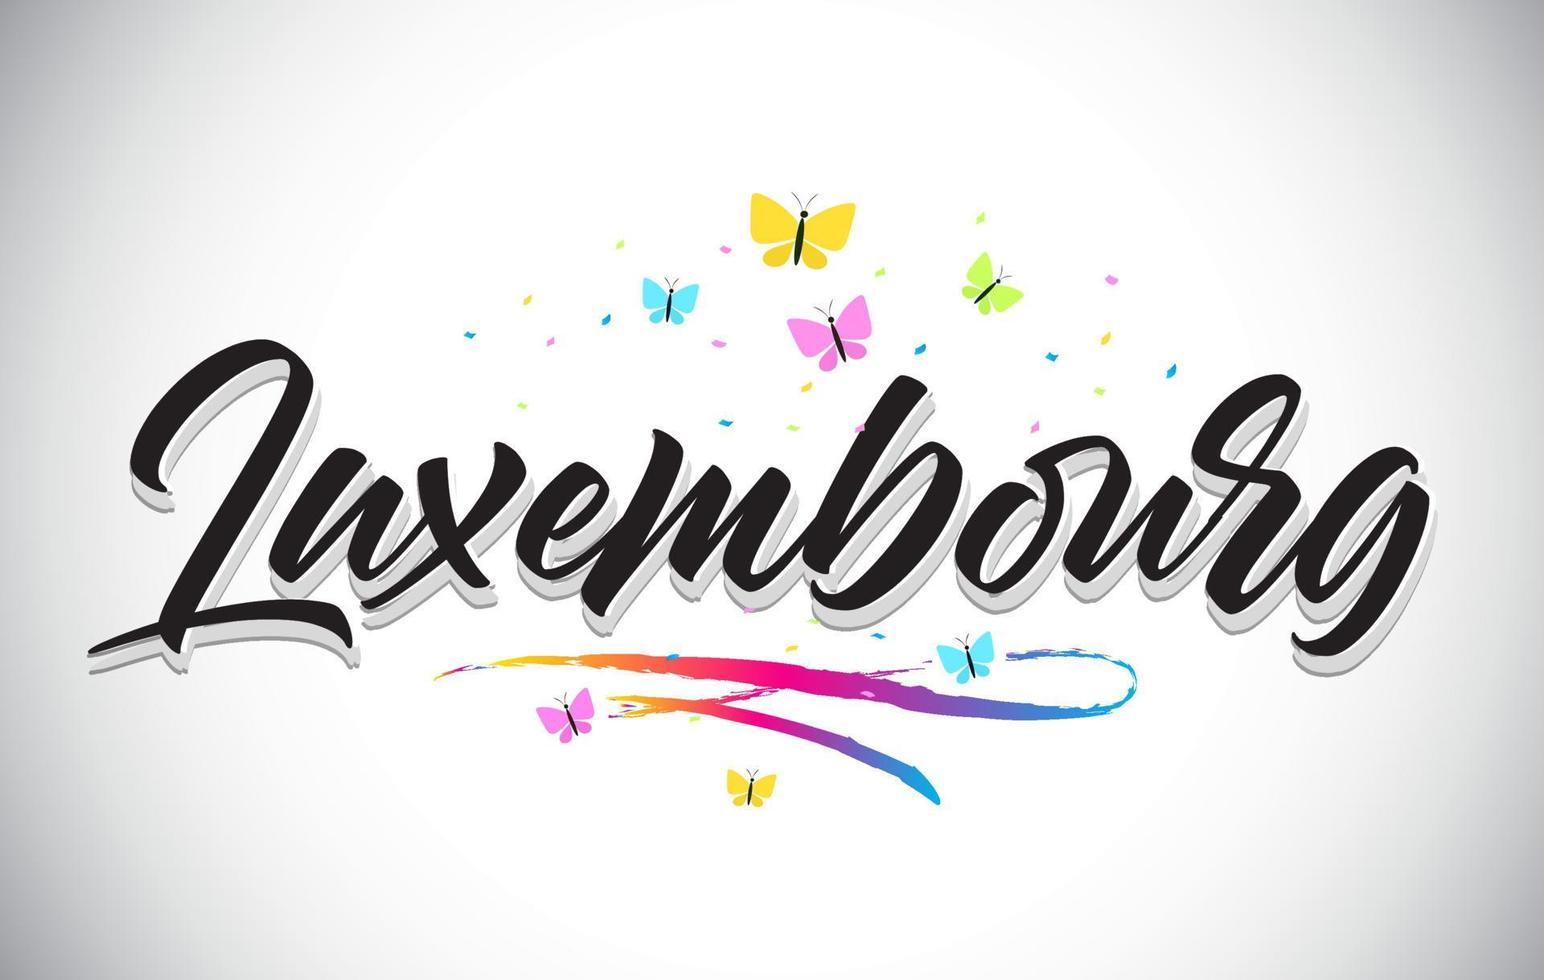 testo di parola vettoriale scritto a mano del Lussemburgo con farfalle e swoosh colorato.